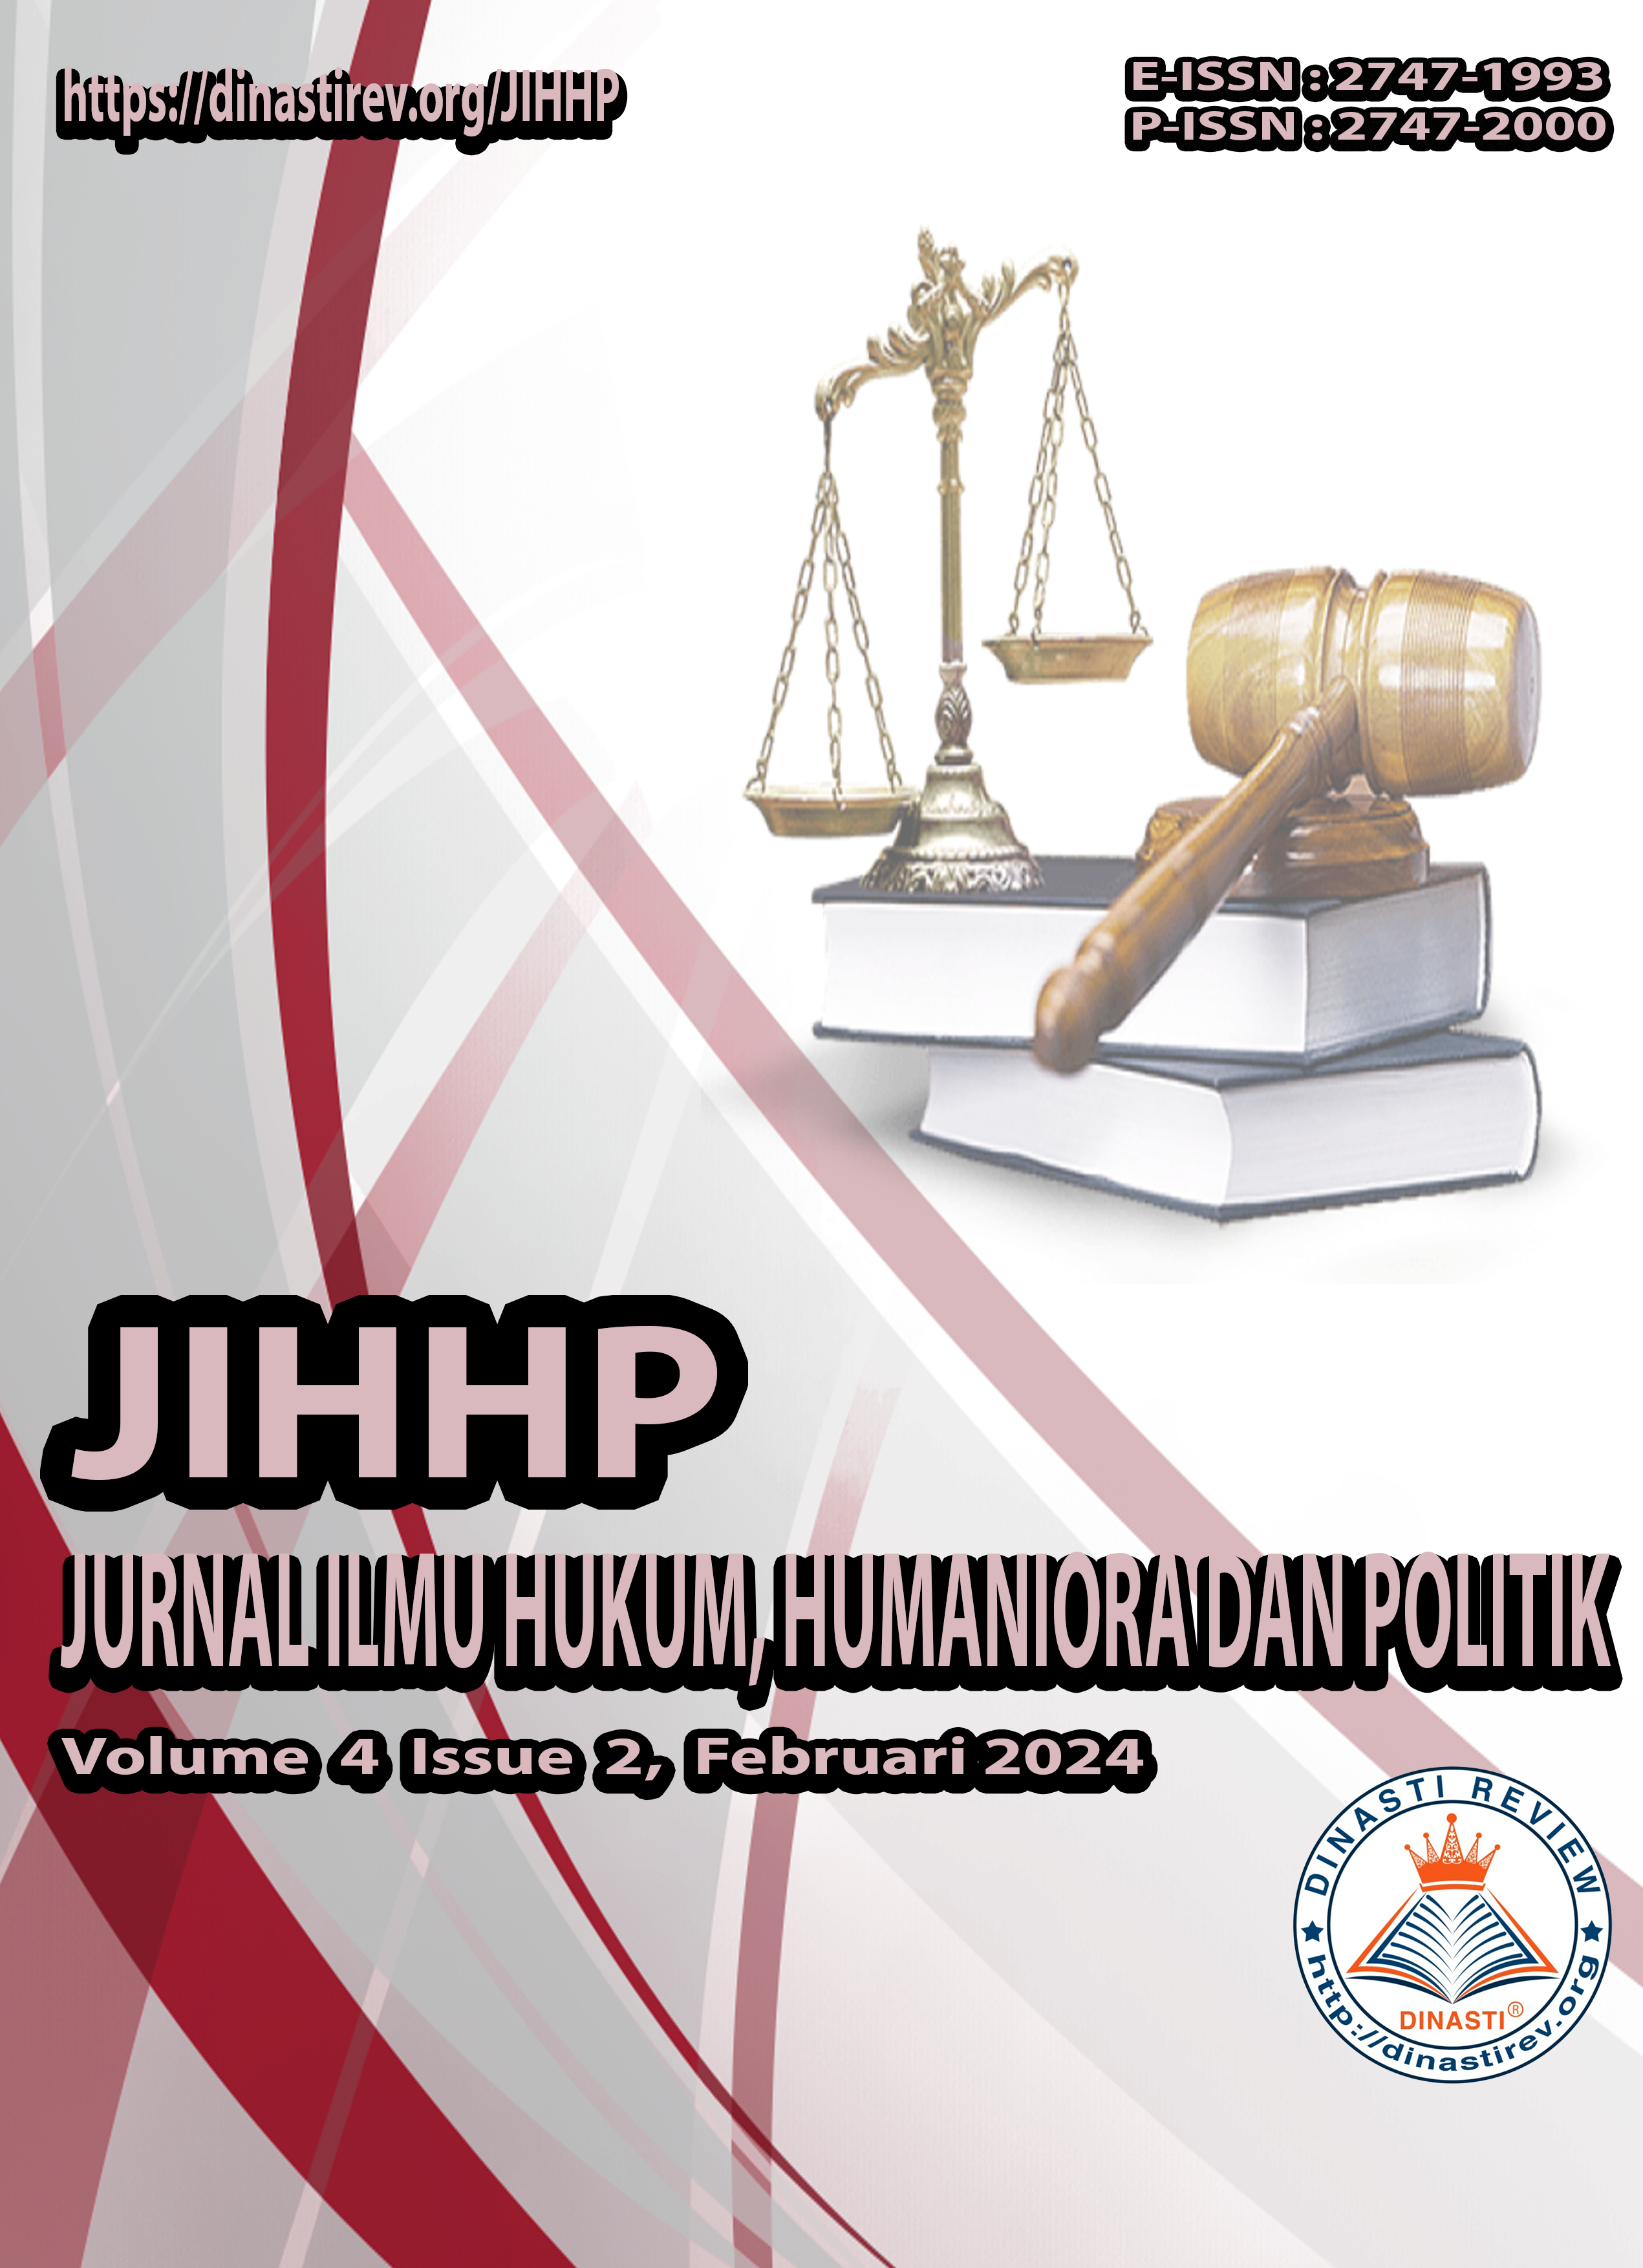 					View Vol. 4 No. 2 (2024): (JIHHP) Jurnal Ilmu Hukum, Humaniora dan Politik (Januari - Februari 2024)
				